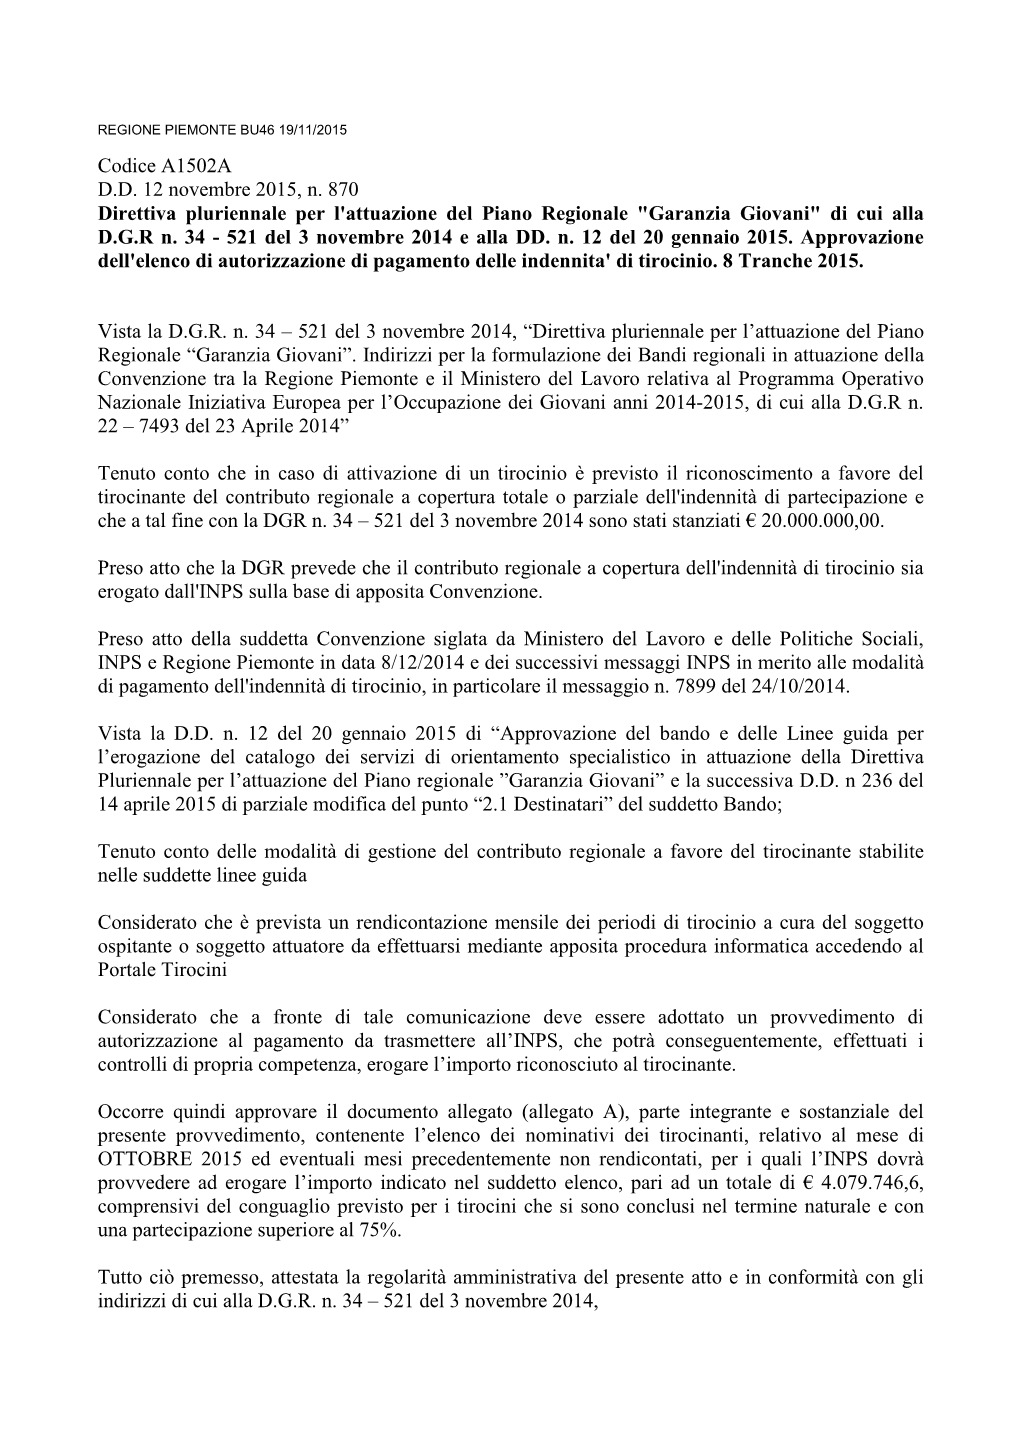 Codice A1502A D.D. 12 Novembre 2015, N. 870 Direttiva Pluriennale Per L'attuazione Del Piano Regionale "Garanzia Giovani&Qu